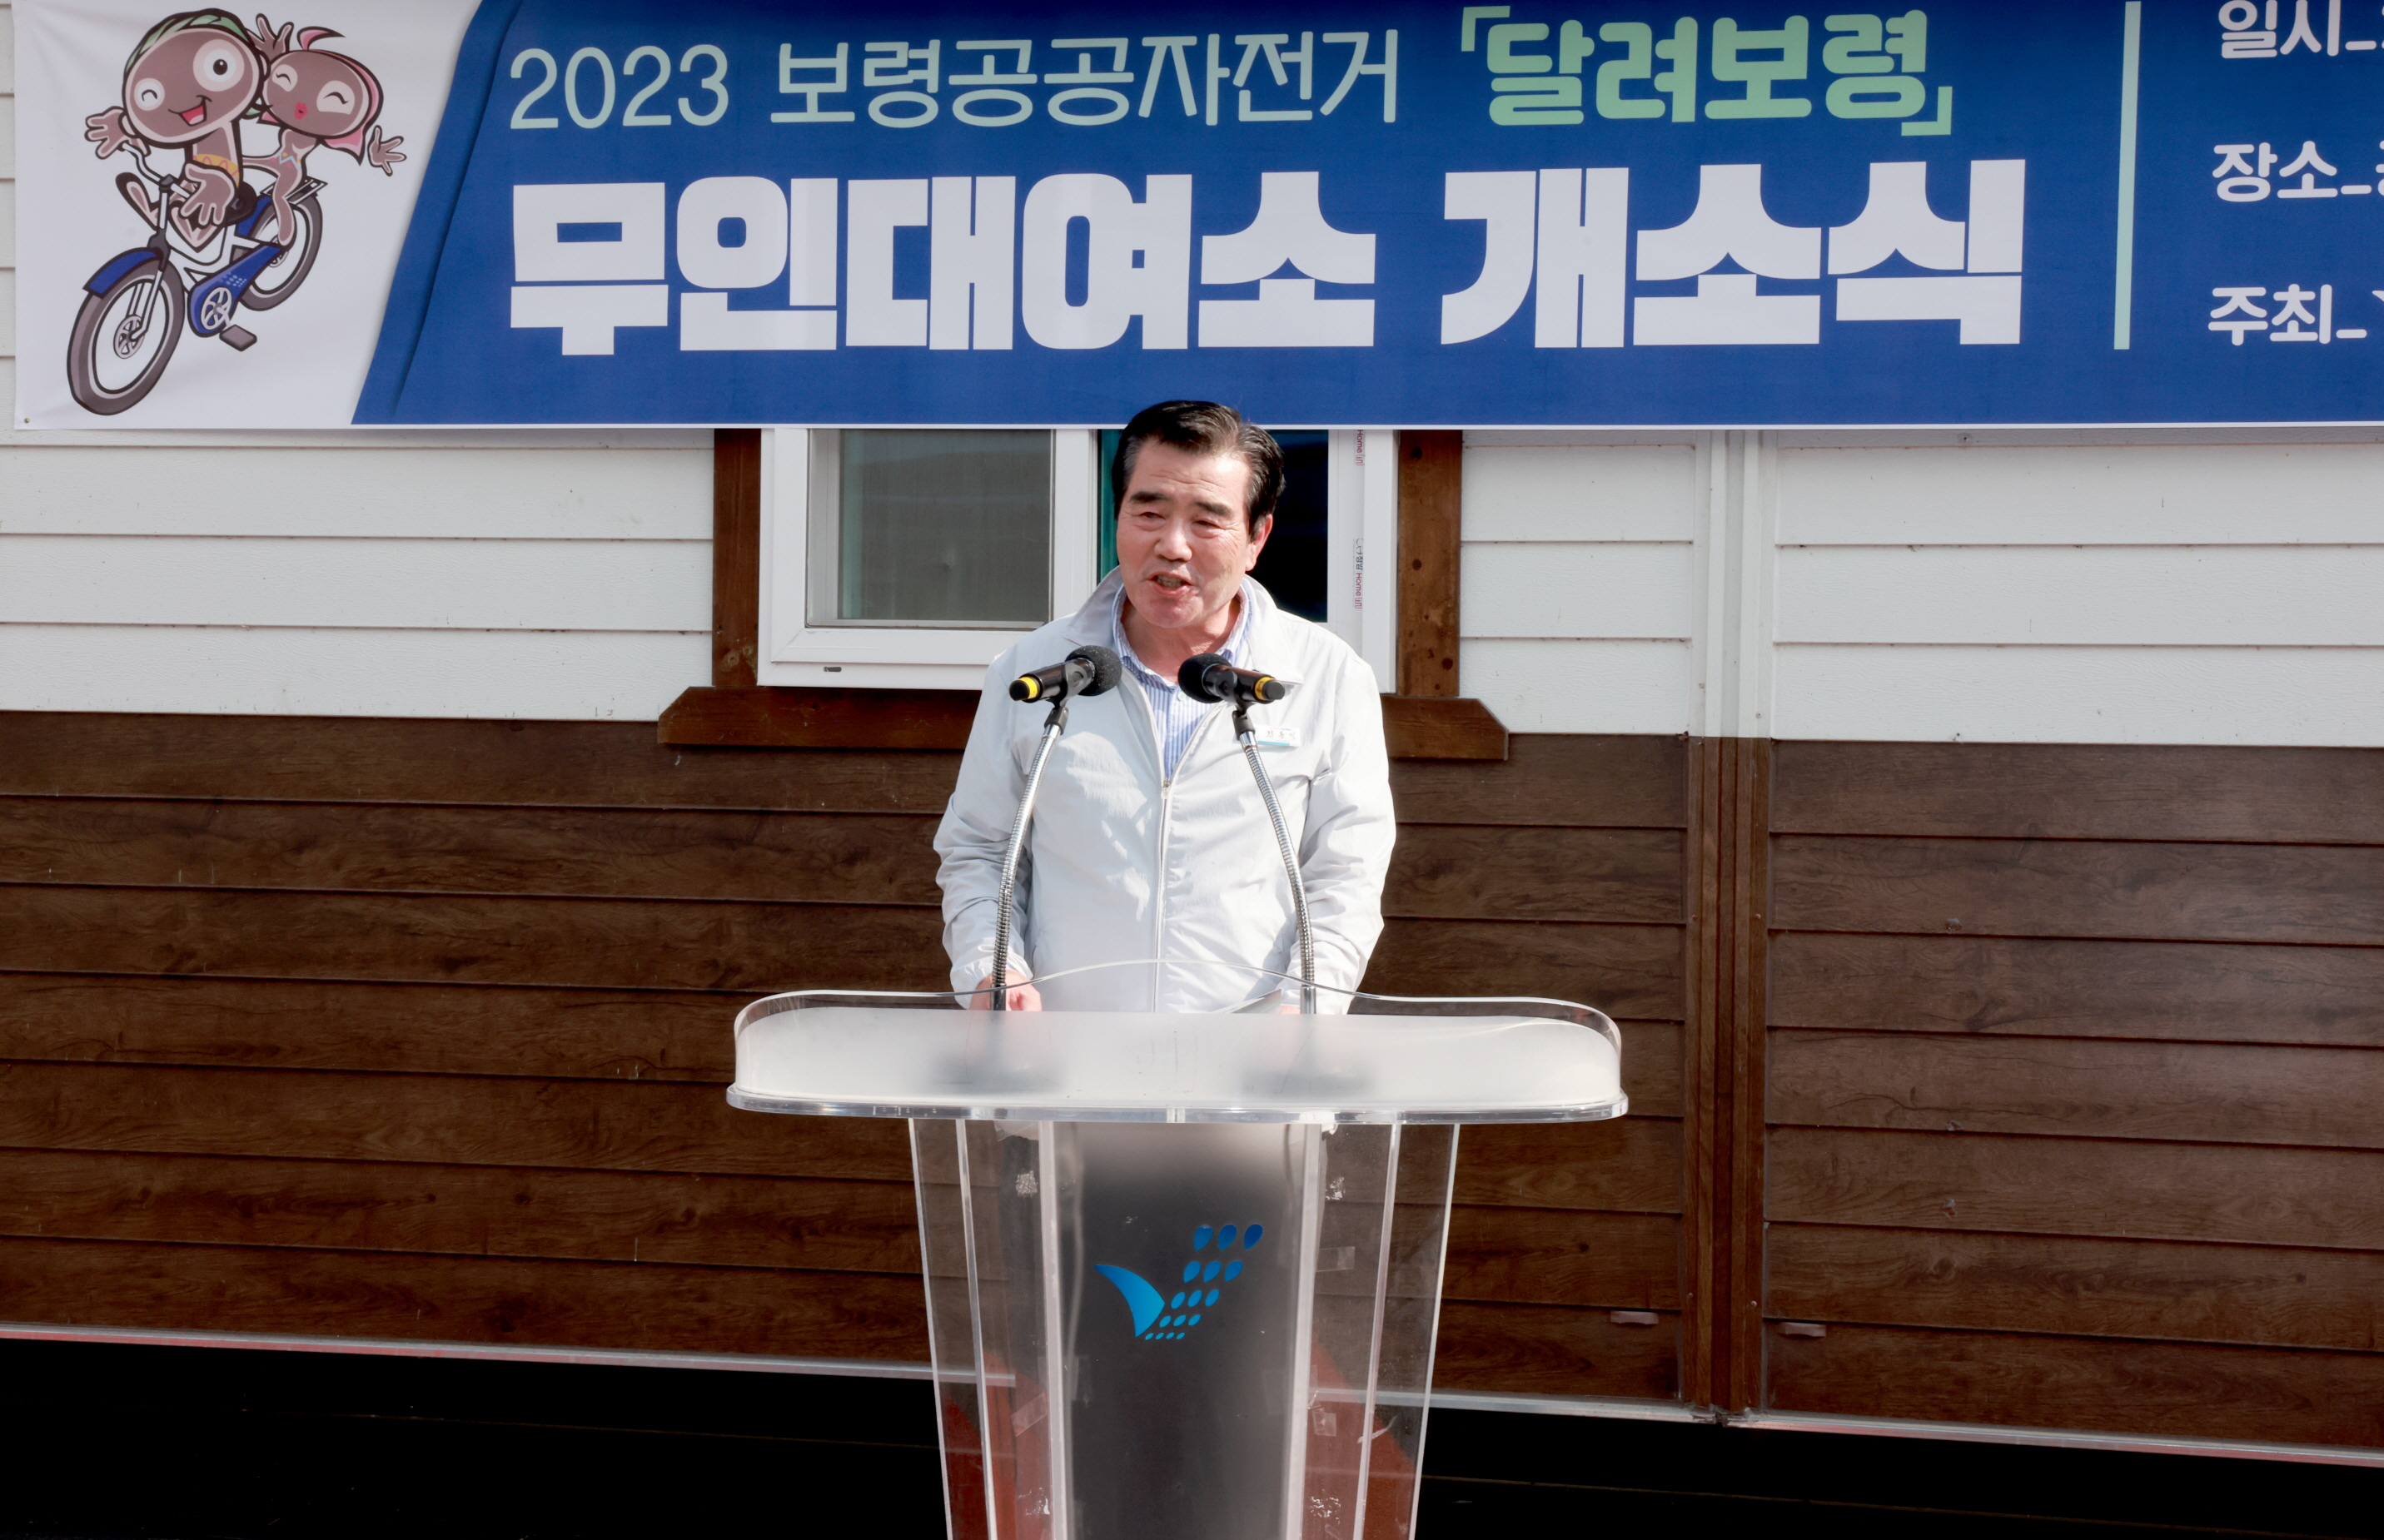 2023 보령공공자전거 '달려보령' 무인대여소 개소식